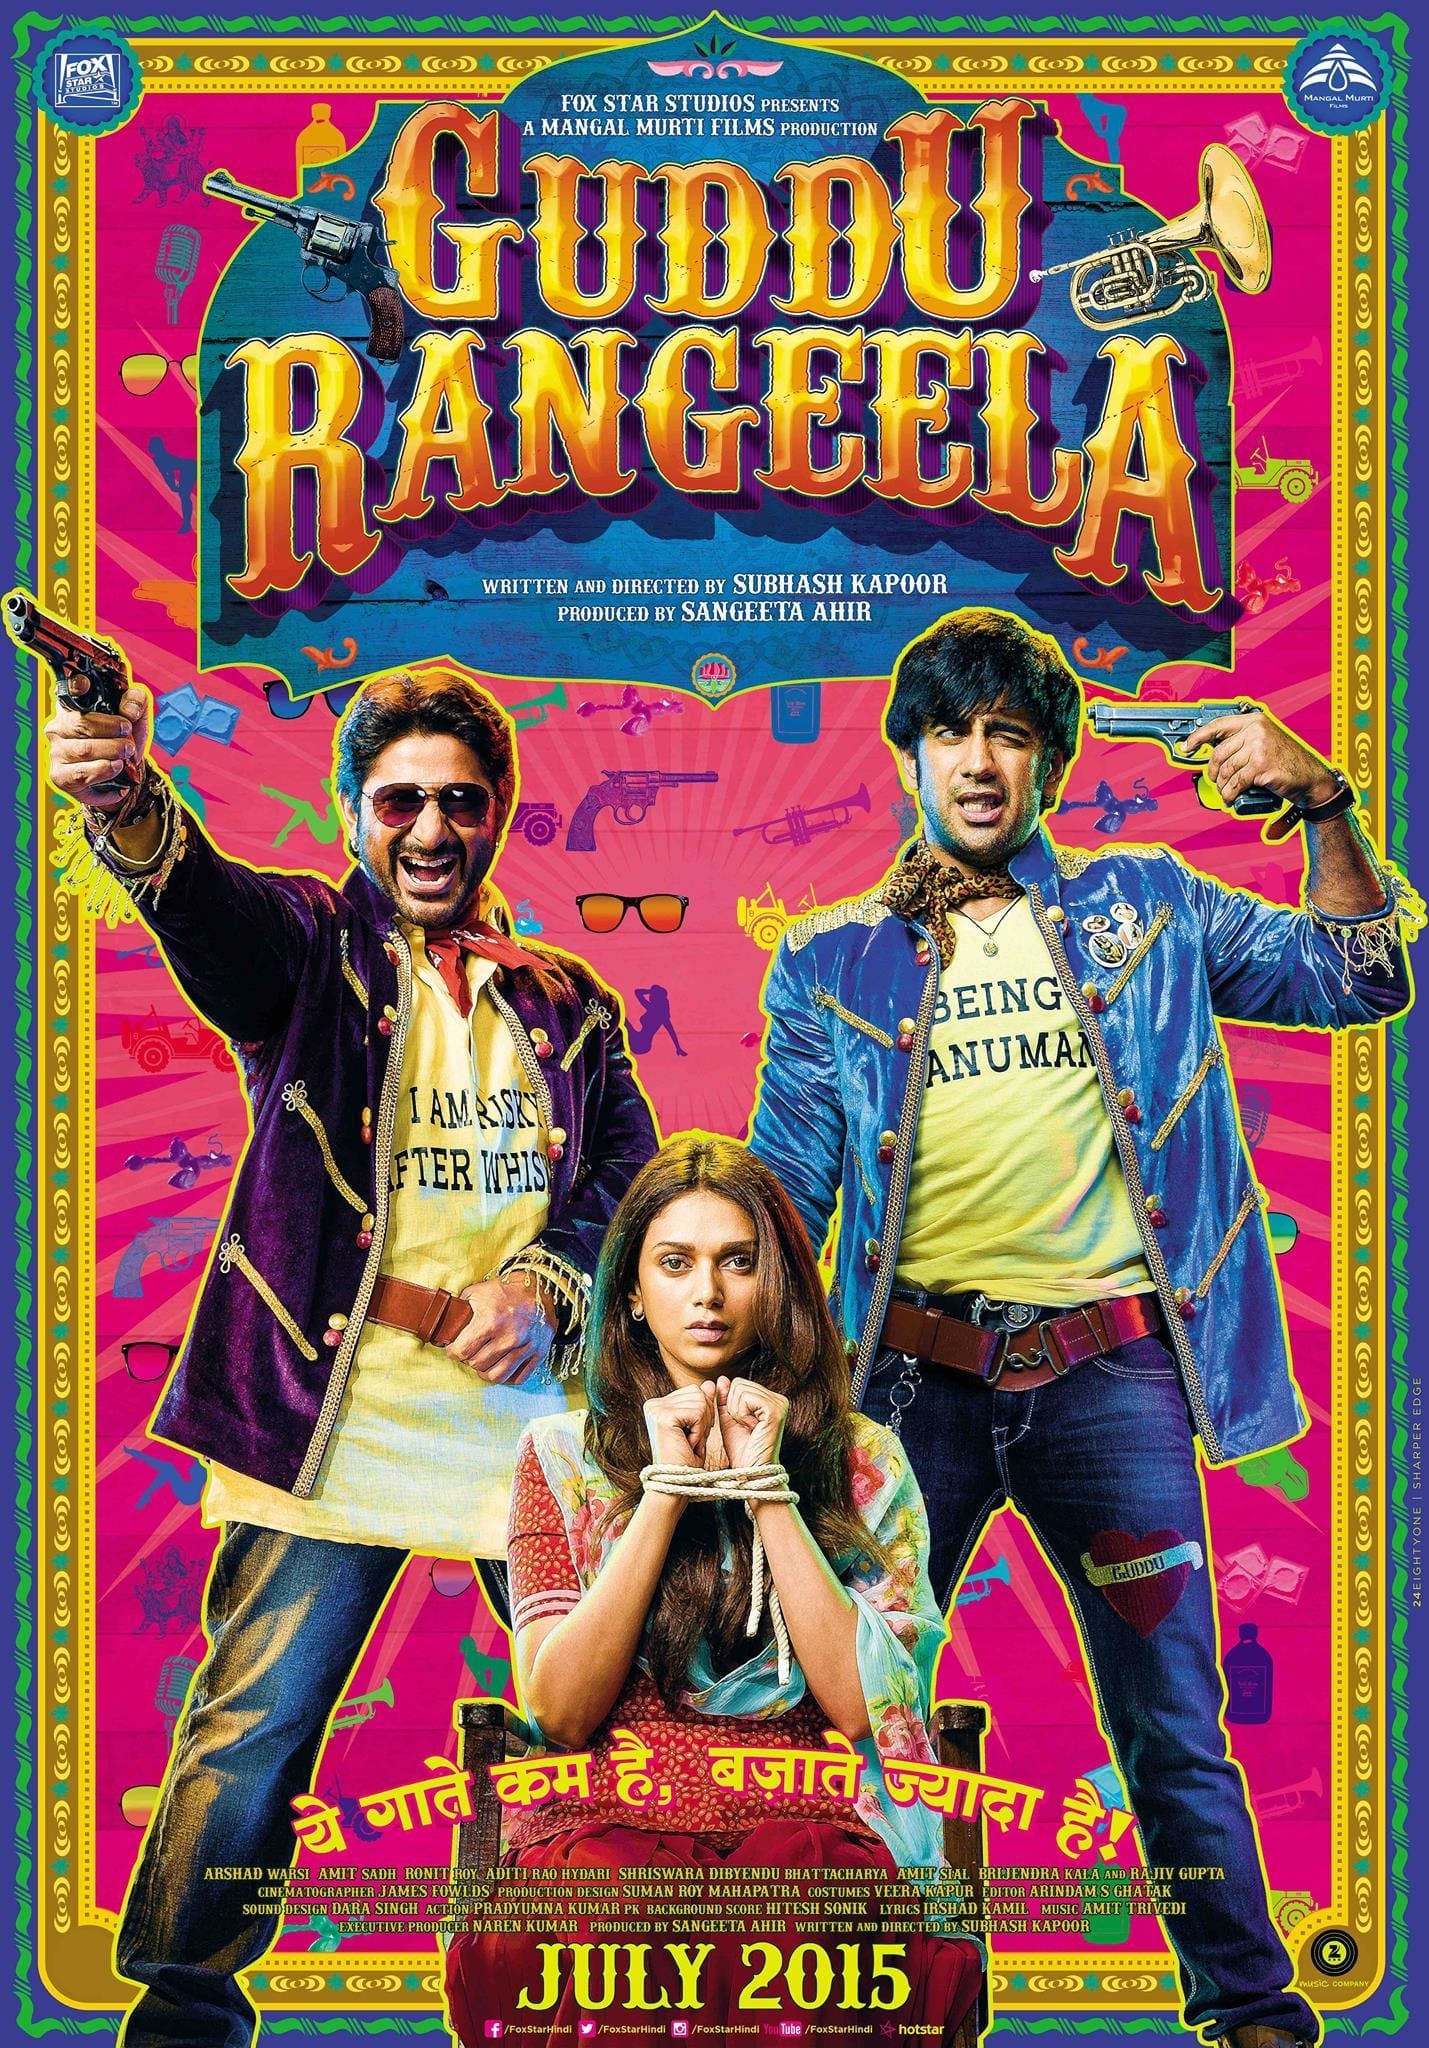 Poster for the movie "Guddu Rangeela"